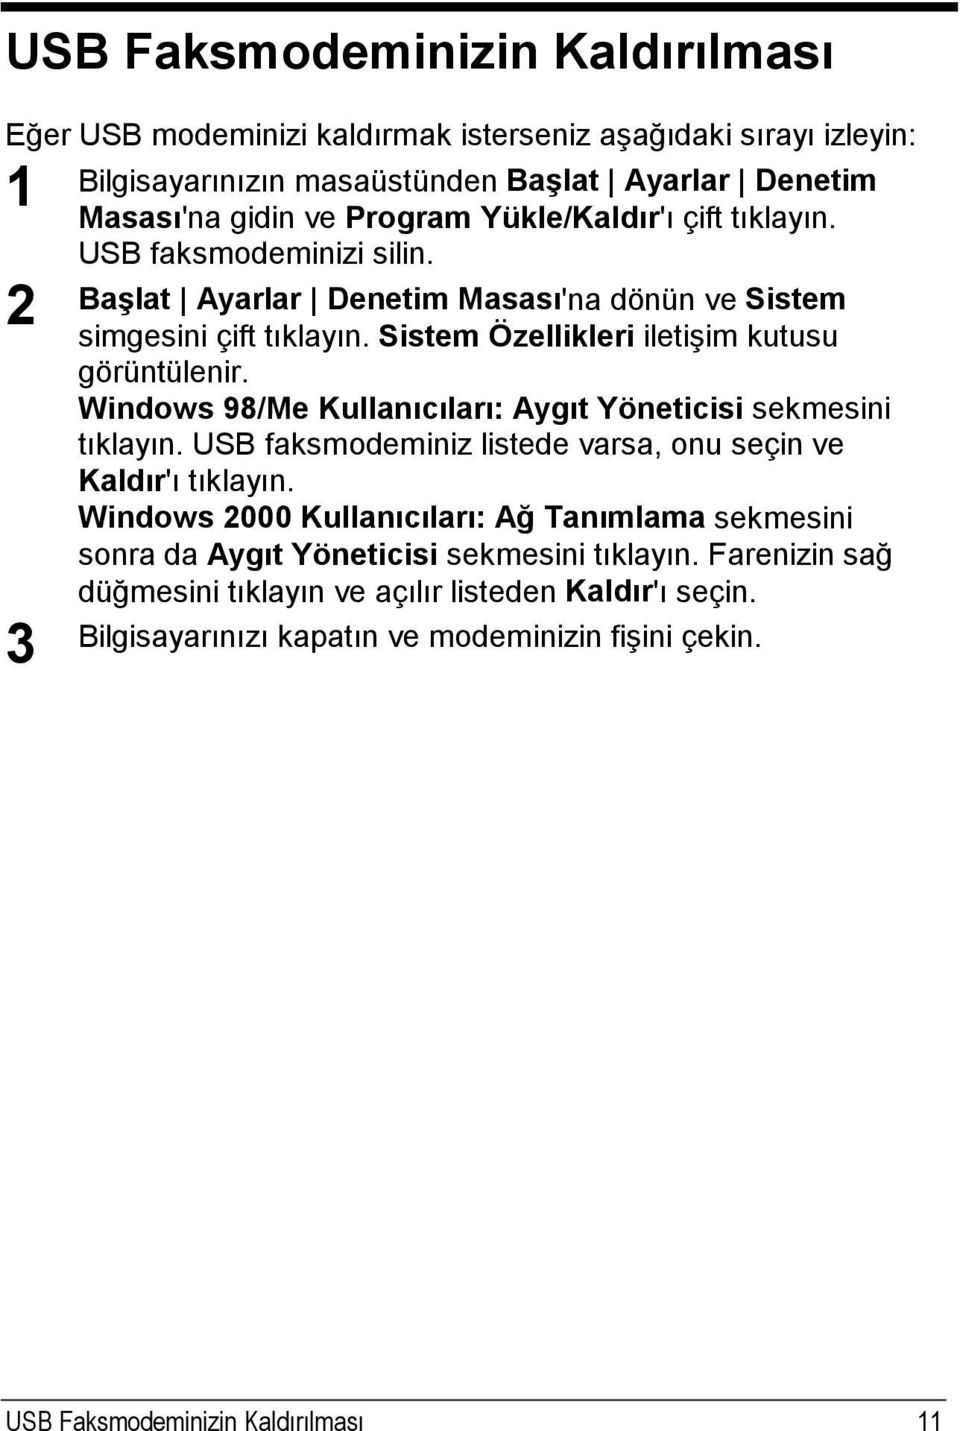 Windows 98/Me Kullanıcıları: Aygıt Yöneticisi sekmesini tıklayın. USB faksmodeminiz listede varsa, onu seçin ve Kaldır'ı tıklayın.